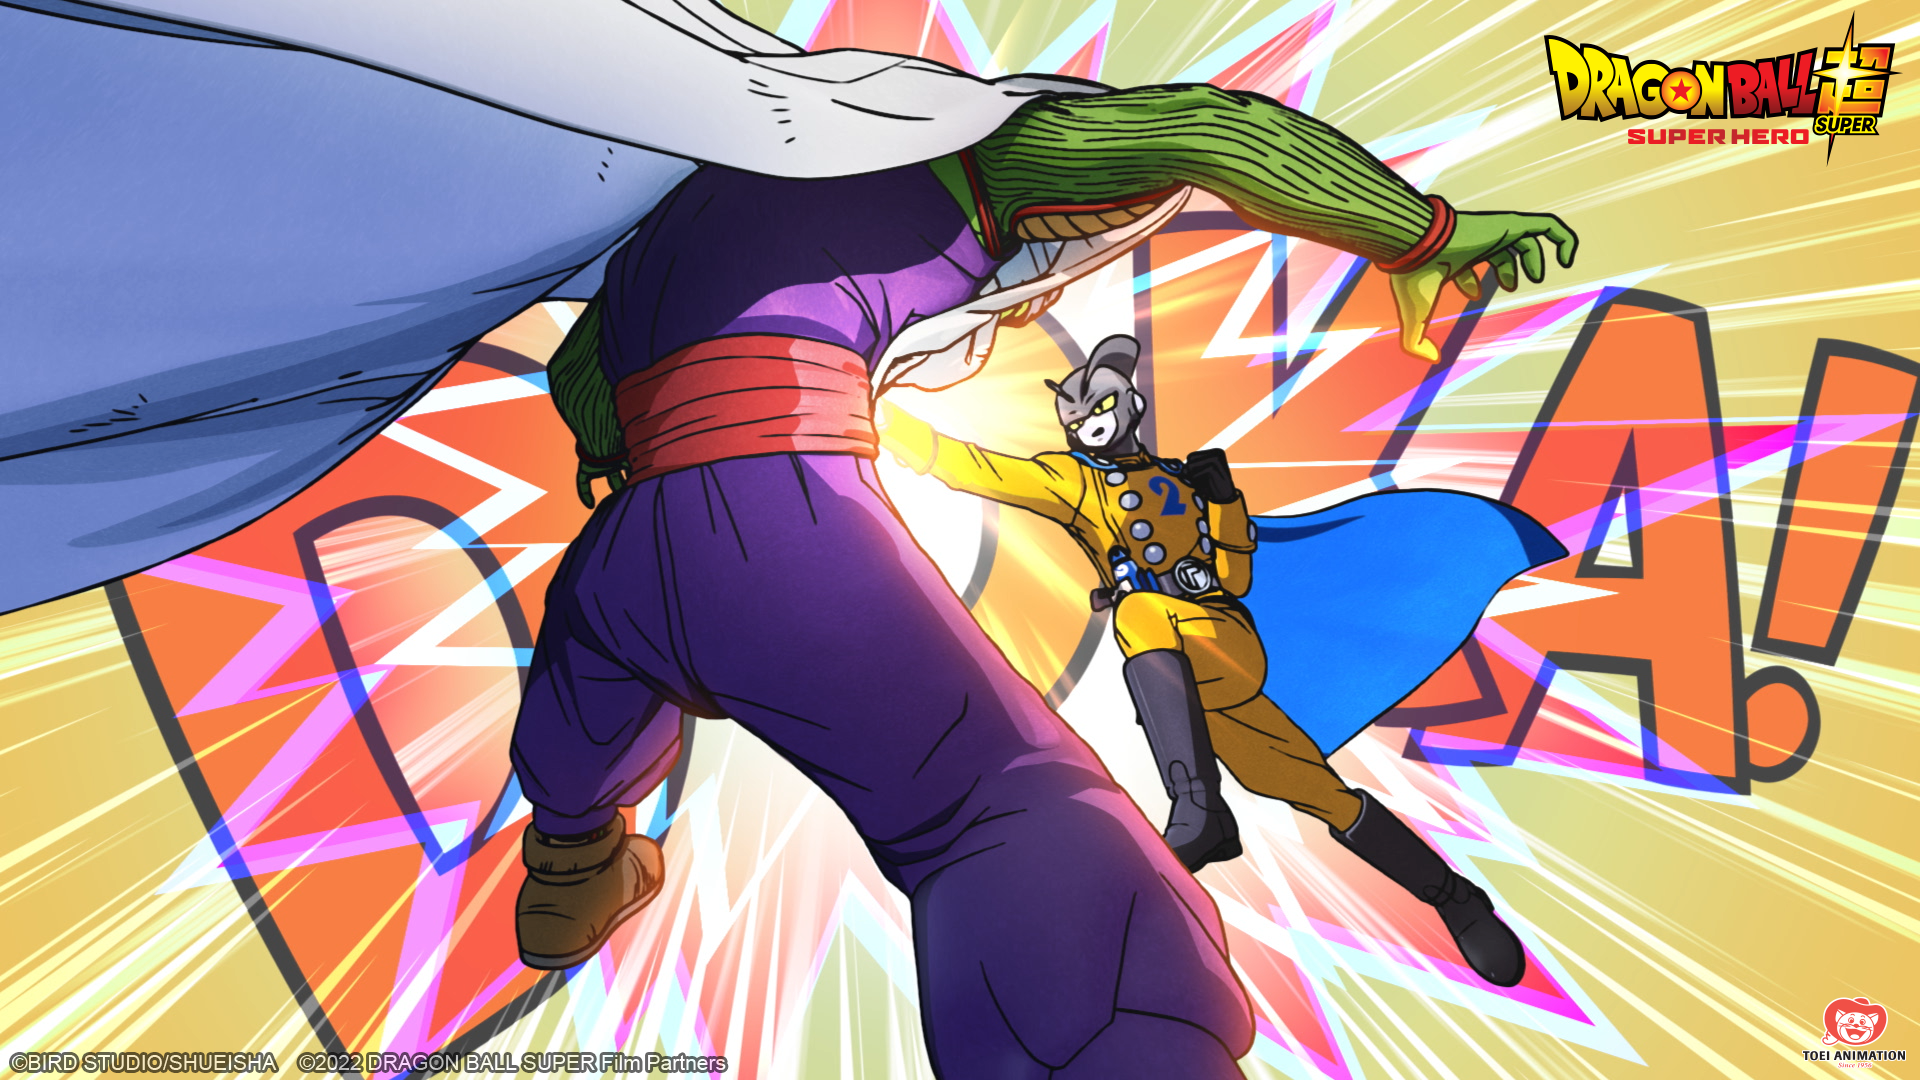 Assista Dragon Ball Super: SUPER HERO apenas na Crunchyroll em julho -  Crunchyroll Notícias